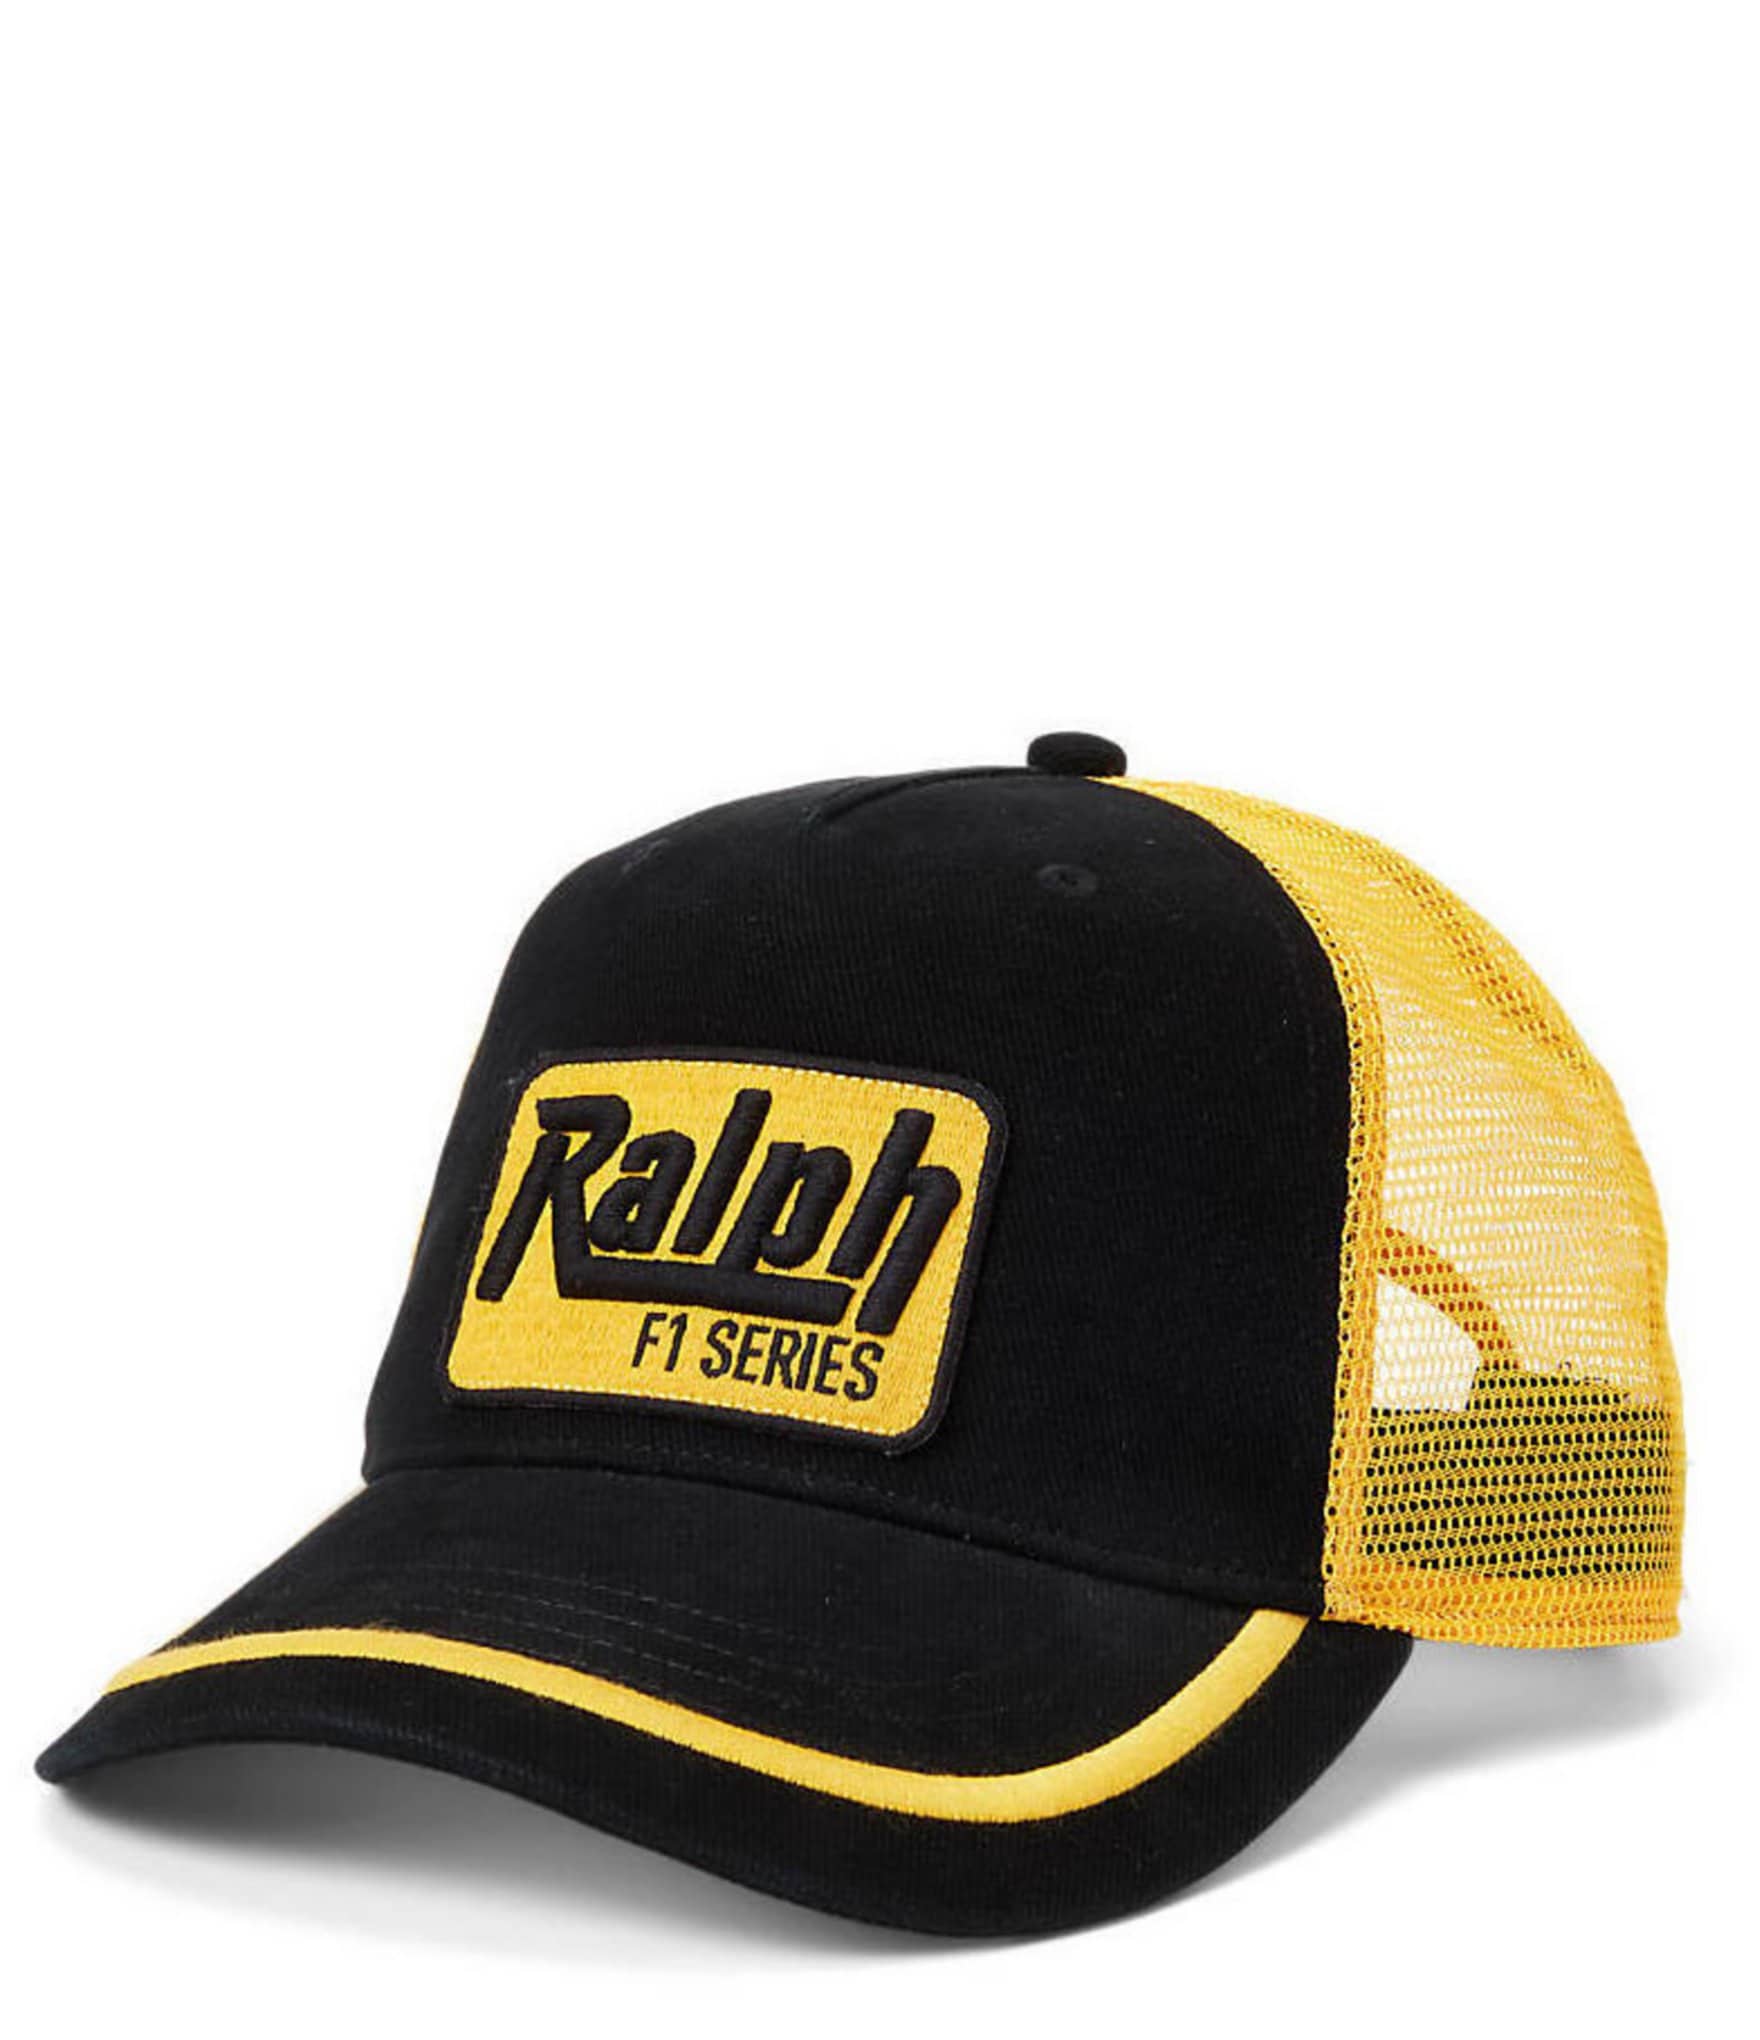 Polo Ralph Lauren Racing-Patch Twill Trucker Cap | Dillard's